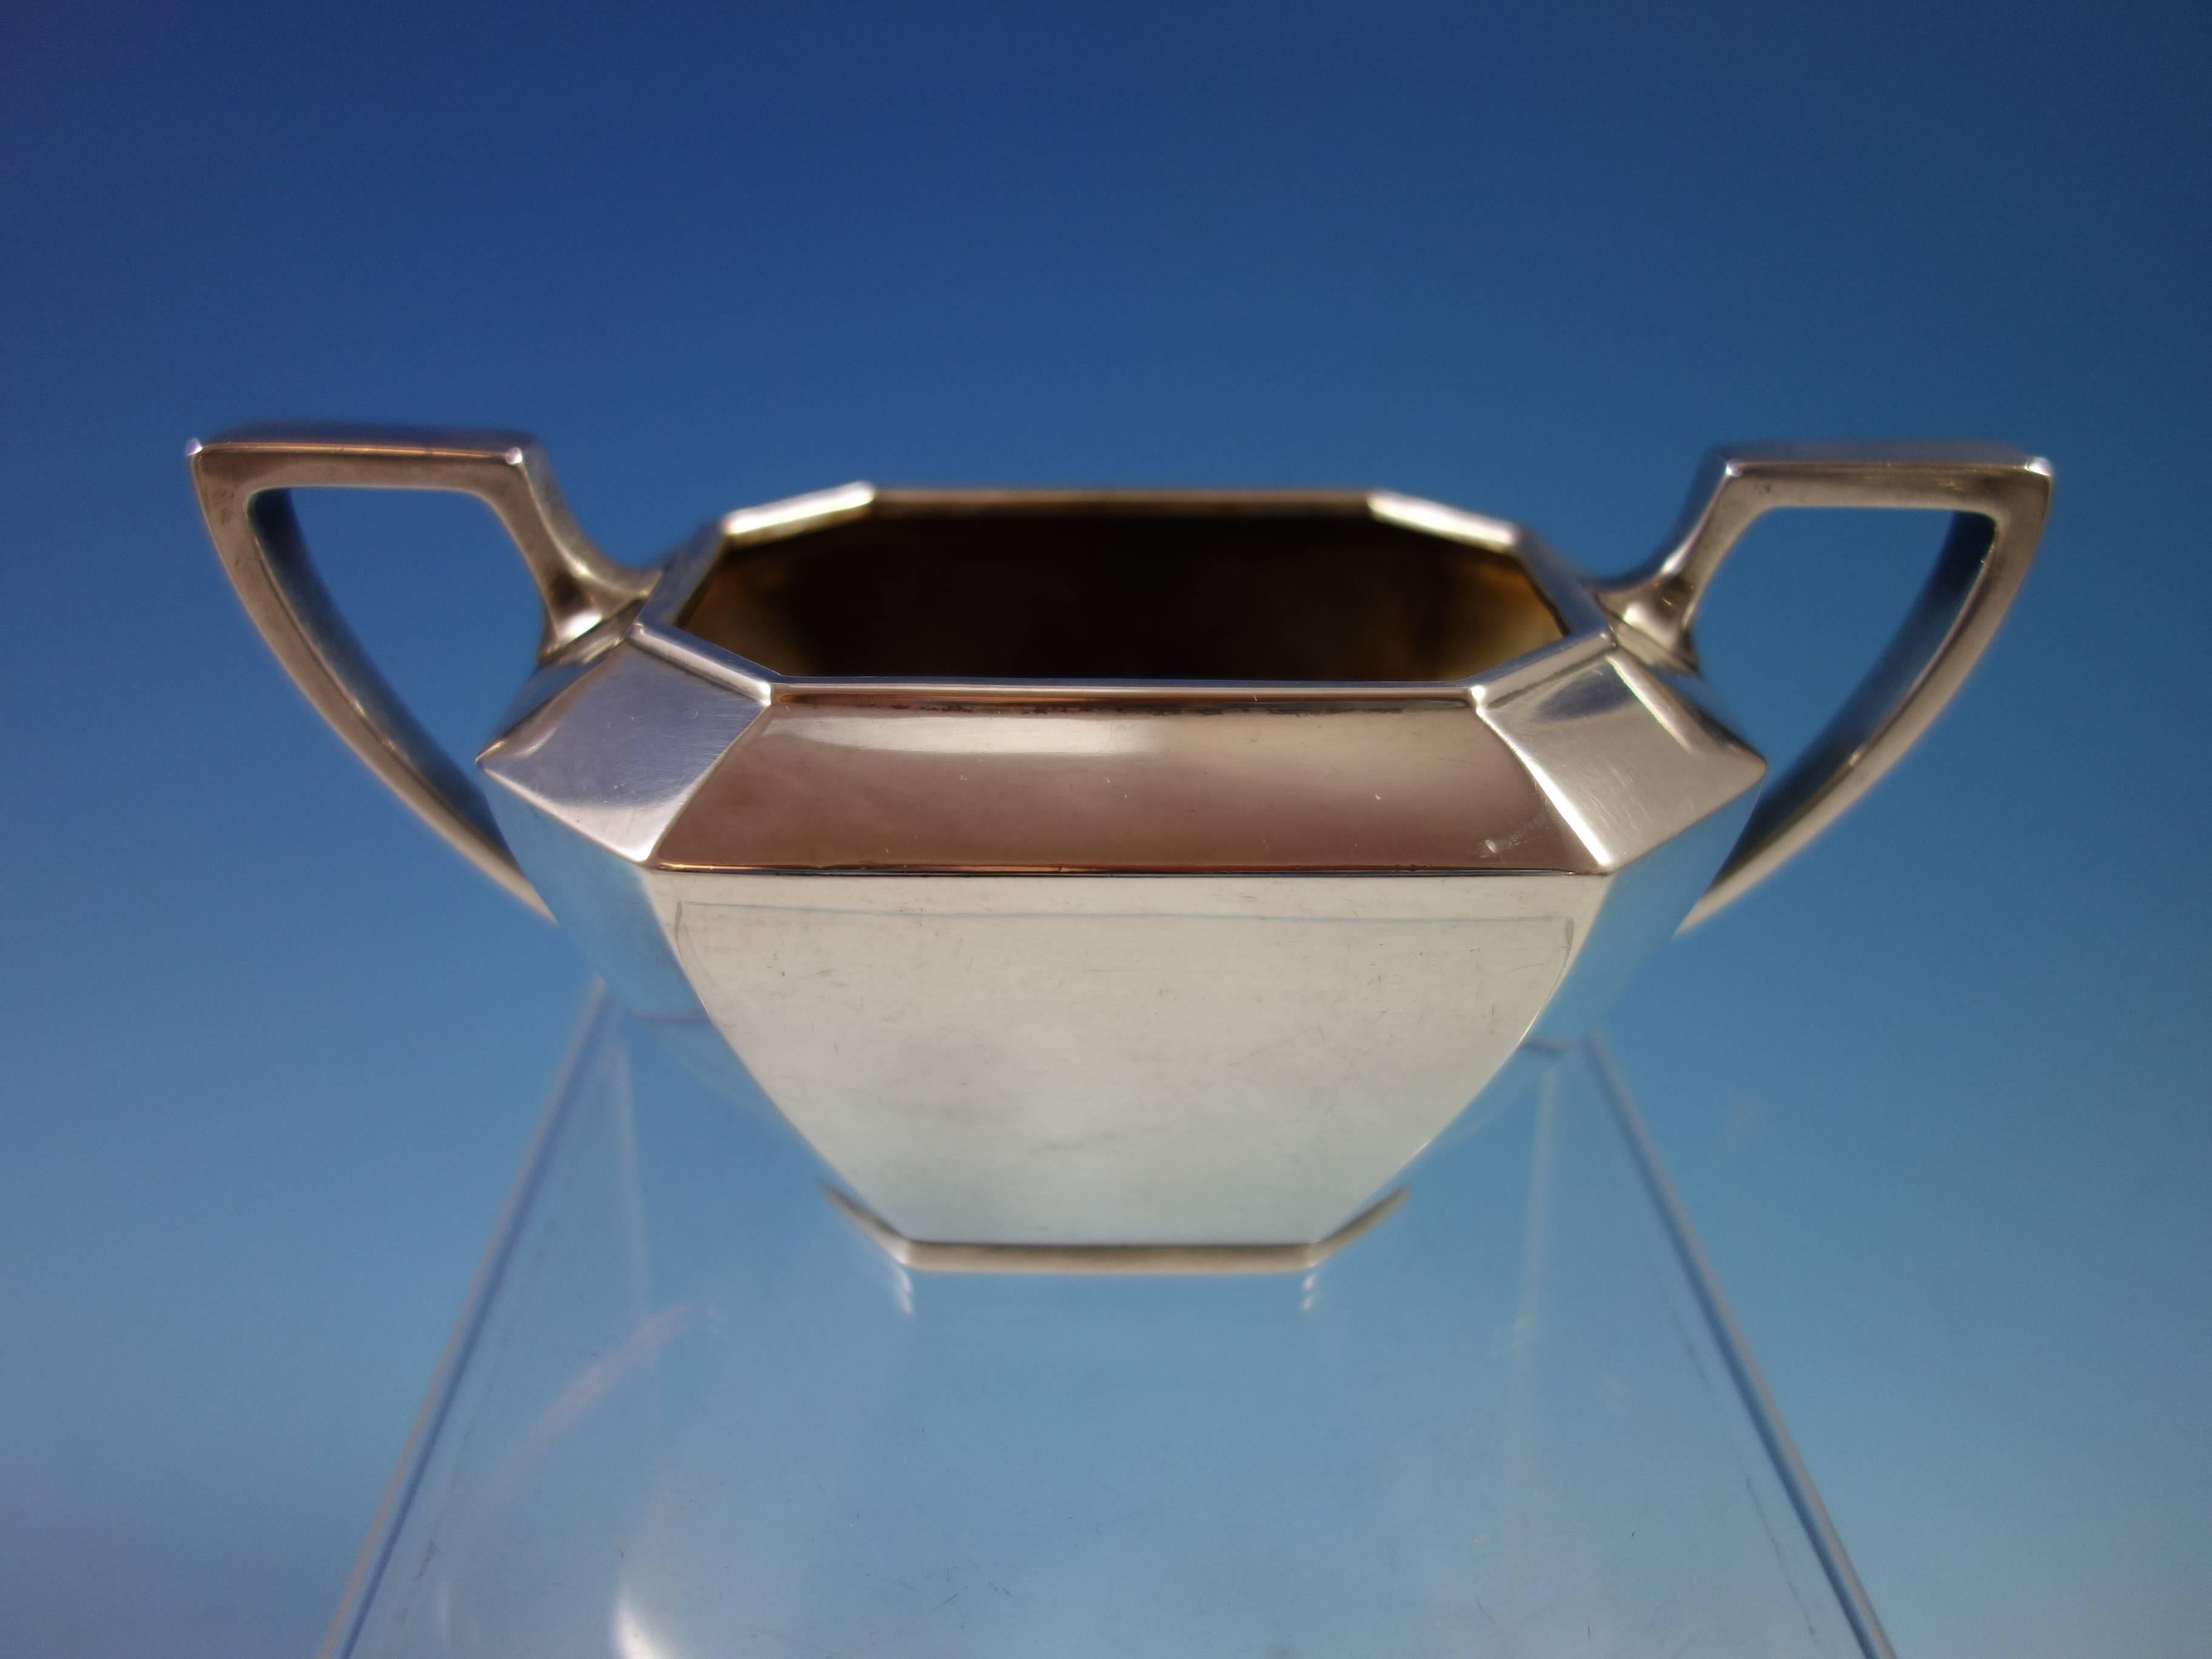 20th Century Fairfax Durgin Gorham Sterling Silver Demitasse Tea Set 3-Piece #40 Hollowware